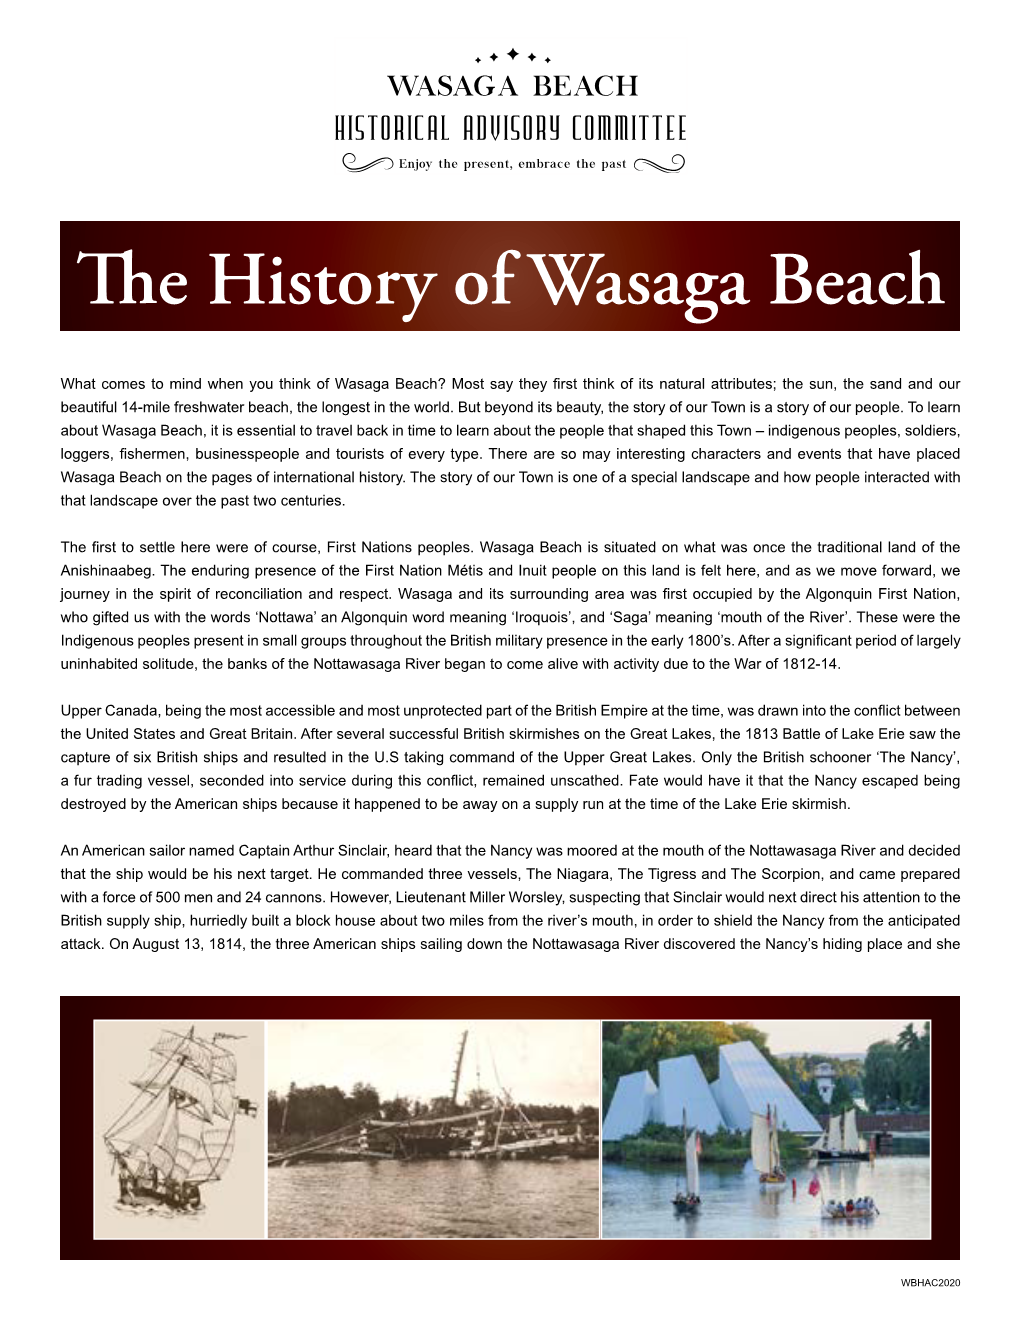 The History of Wasaga Beach